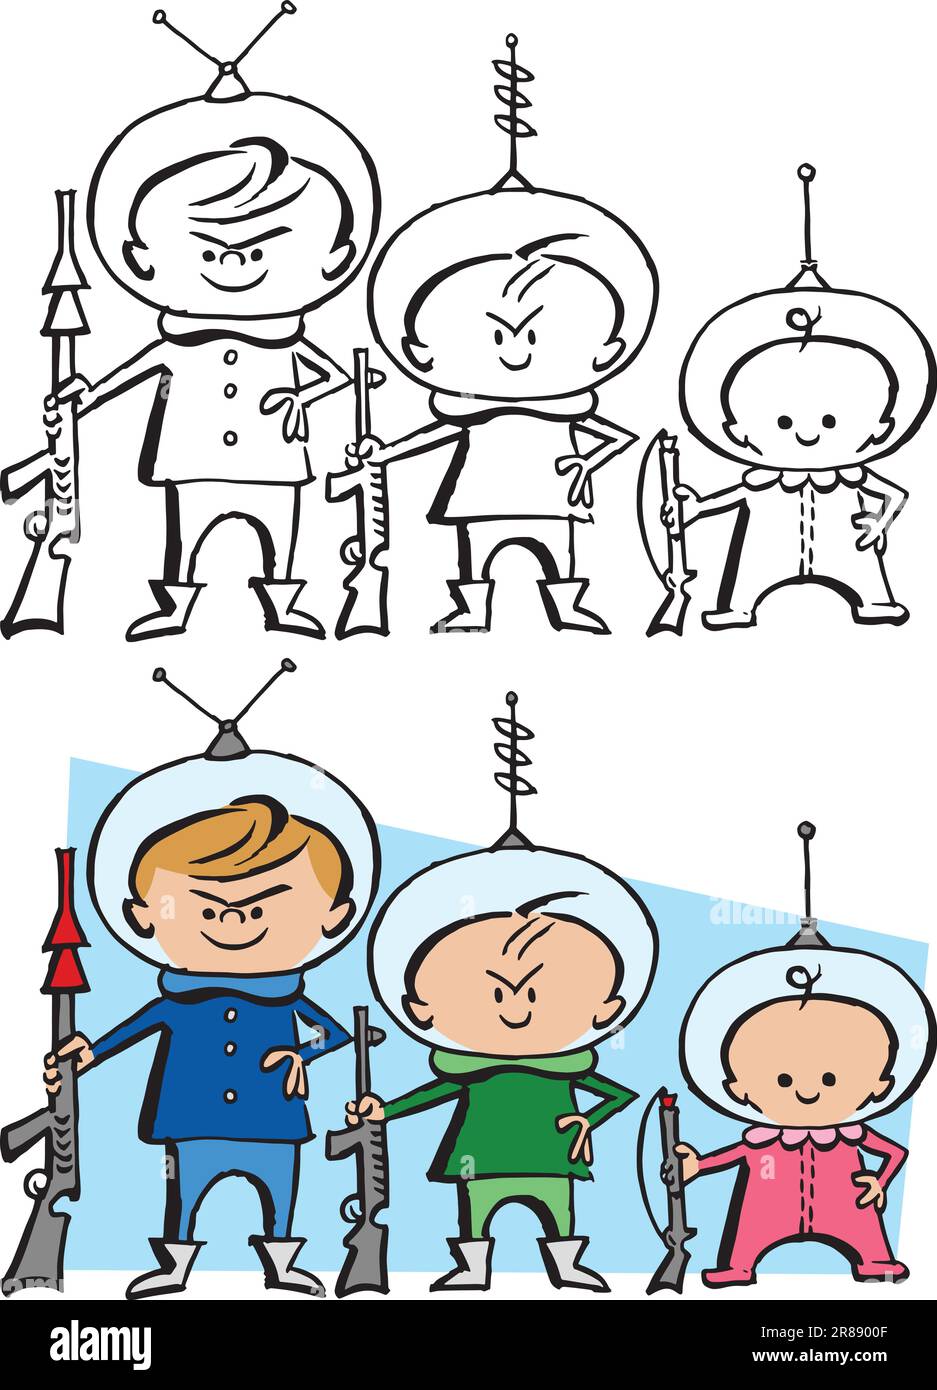 Une caricature rétro vintage d'un groupe d'enfants jouant comme des astronautes. Illustration de Vecteur